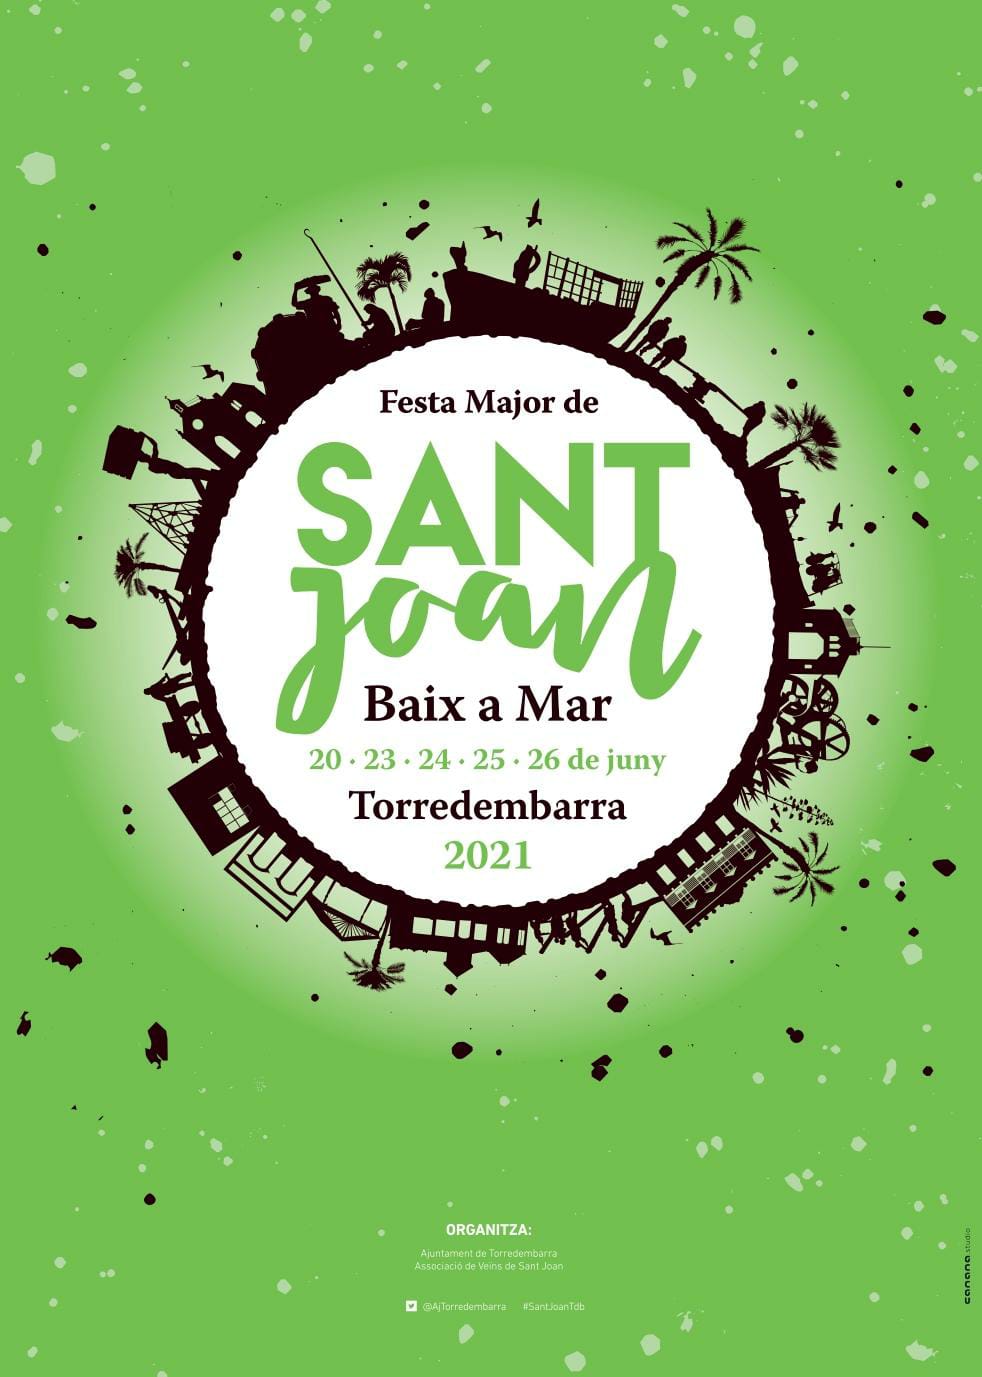 Sant-Joan-Torredembarra.jpg